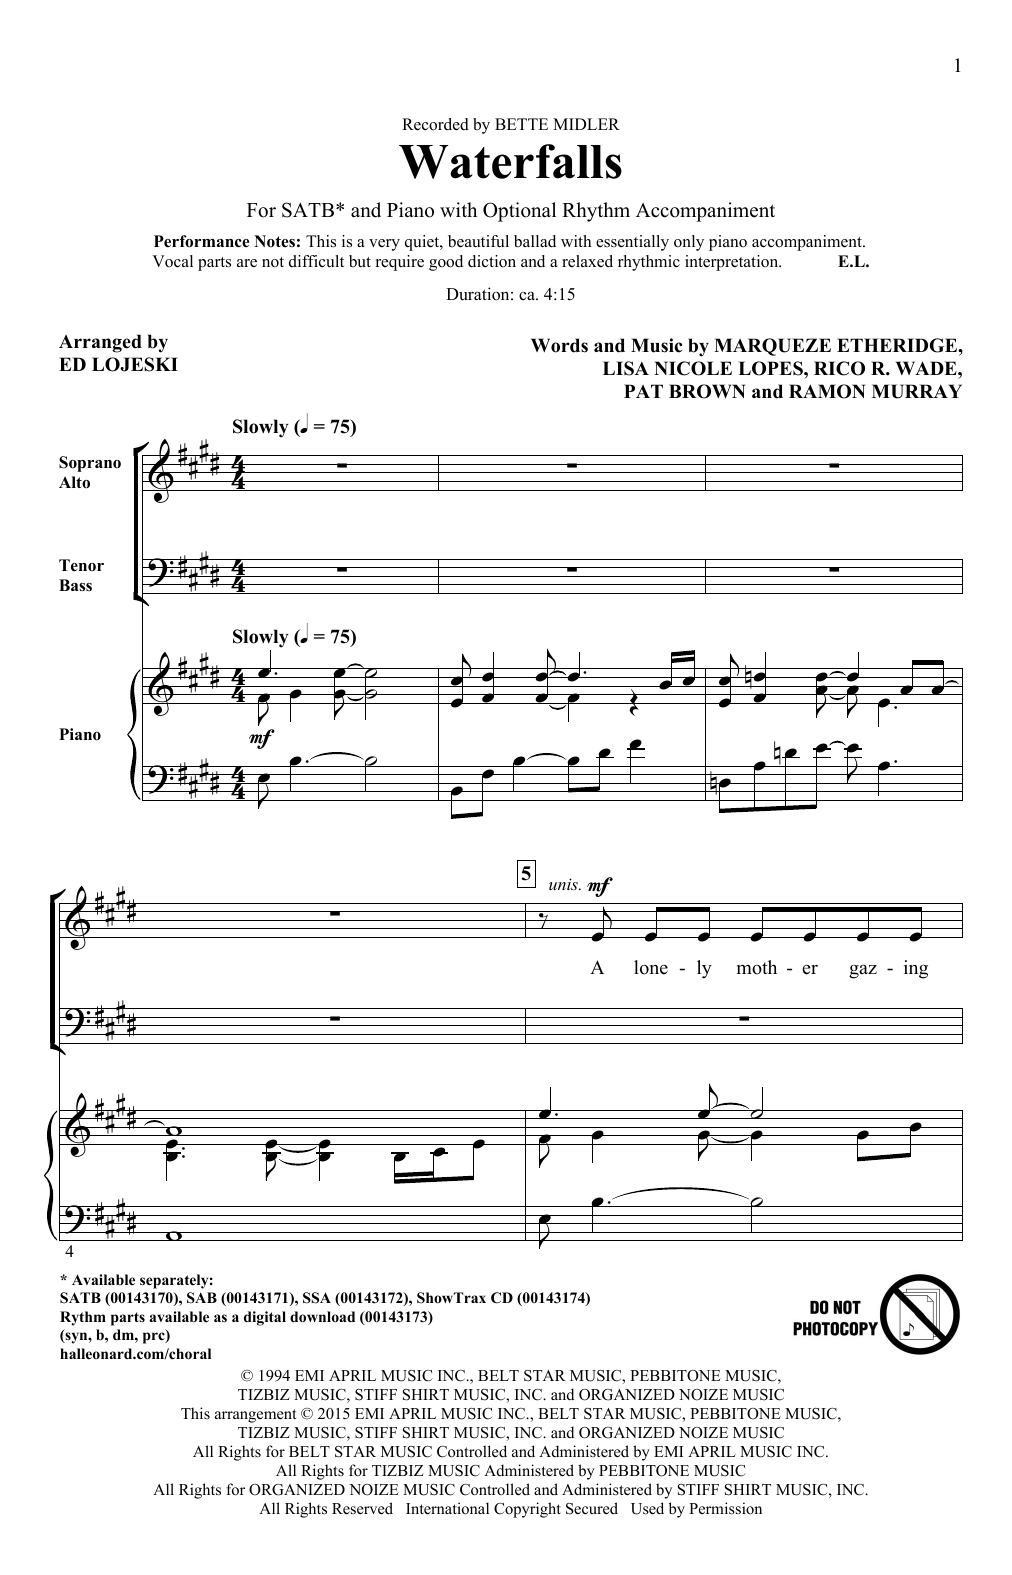 Ed Lojeski Waterfalls Sheet Music Notes & Chords for SAB - Download or Print PDF